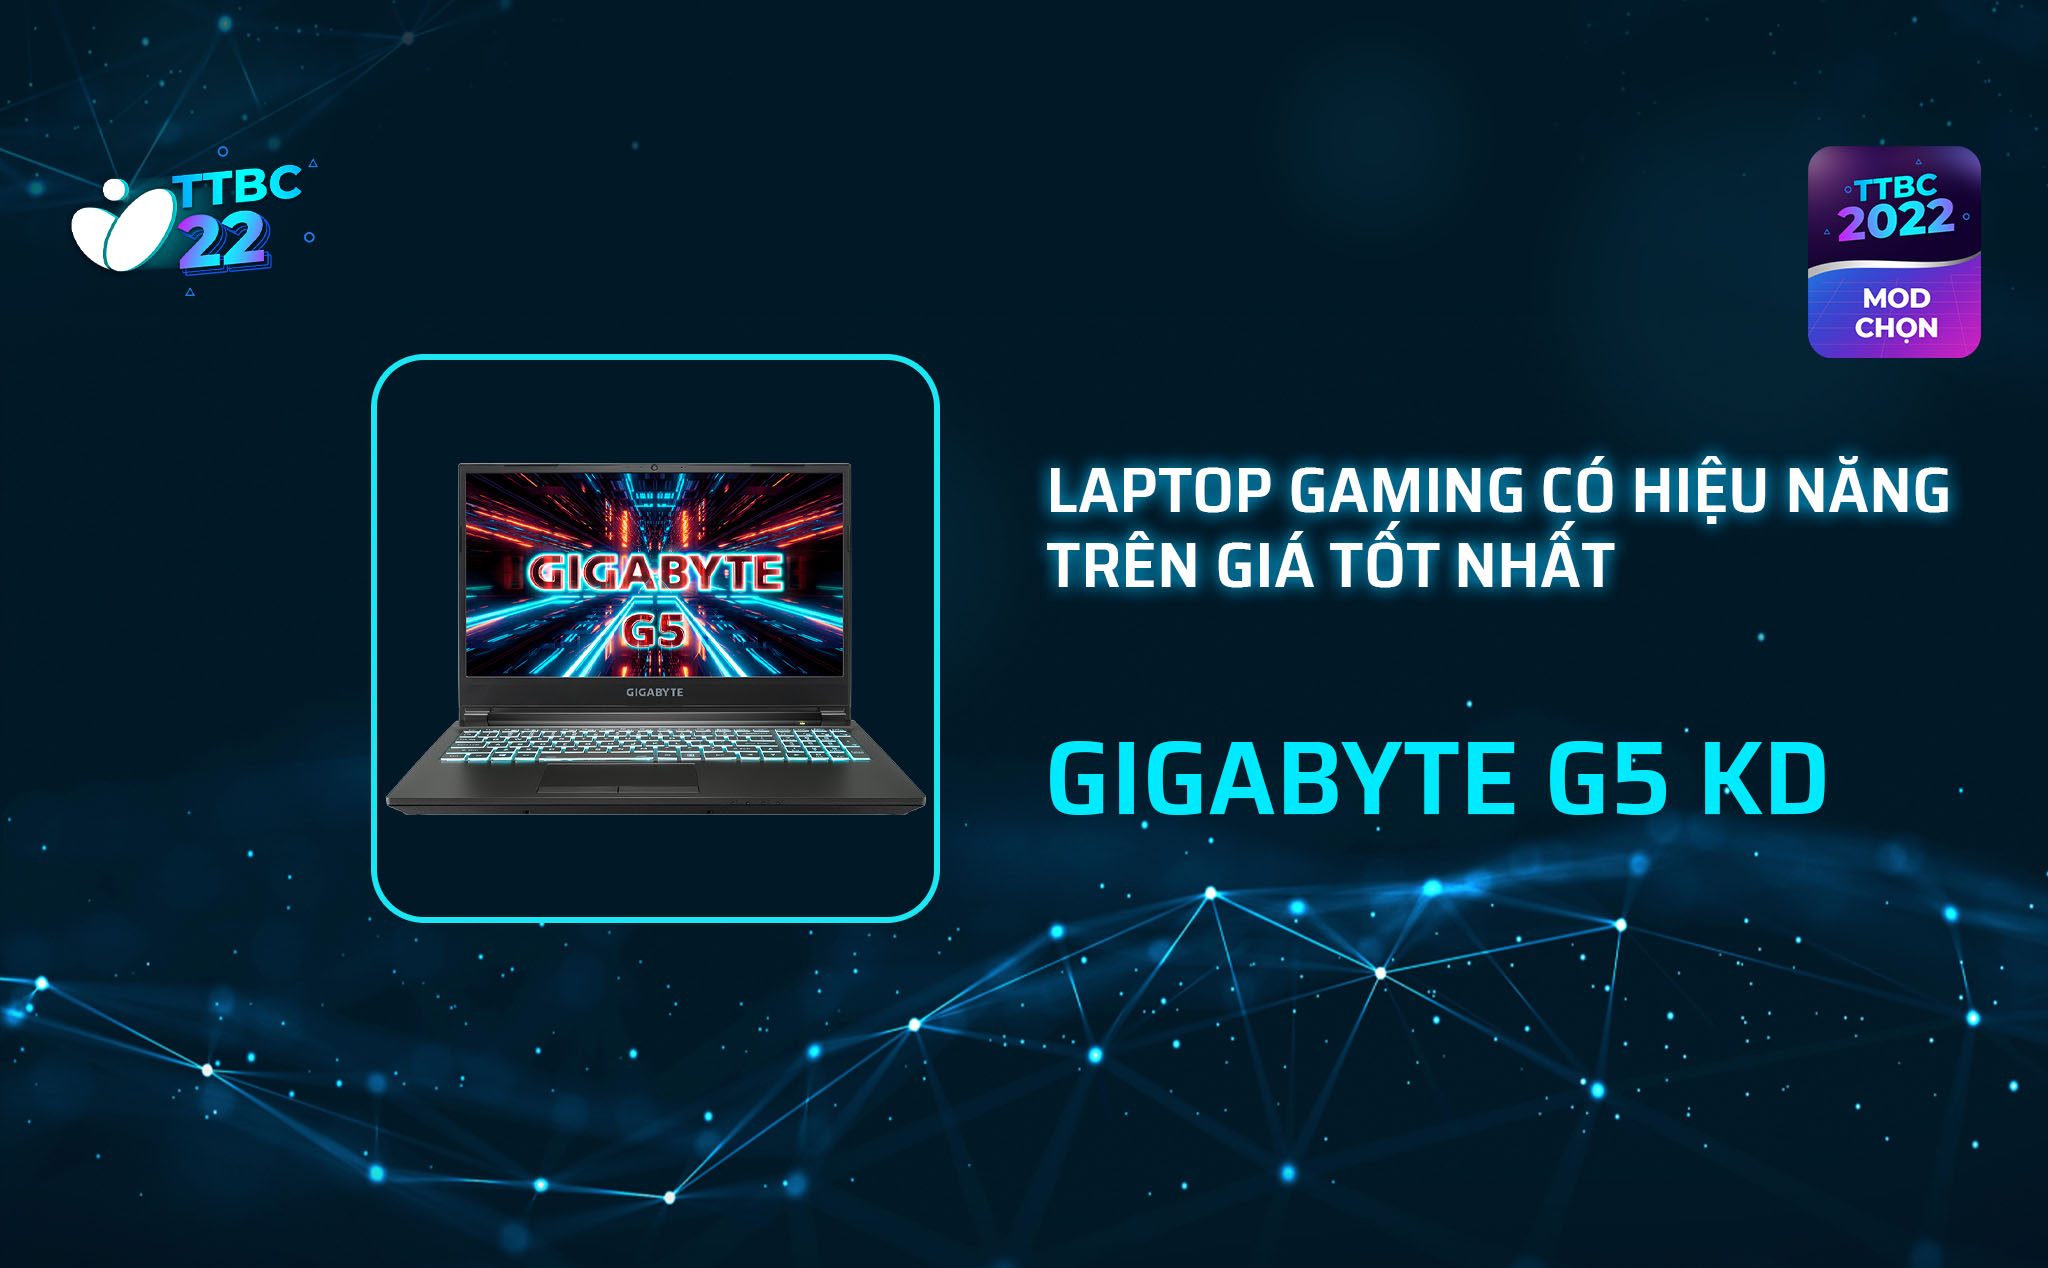 TTBC22 - Mod choice - Laptop gaming có hiệu năng trên giá tốt nhất - GIGABYTE G5 KD